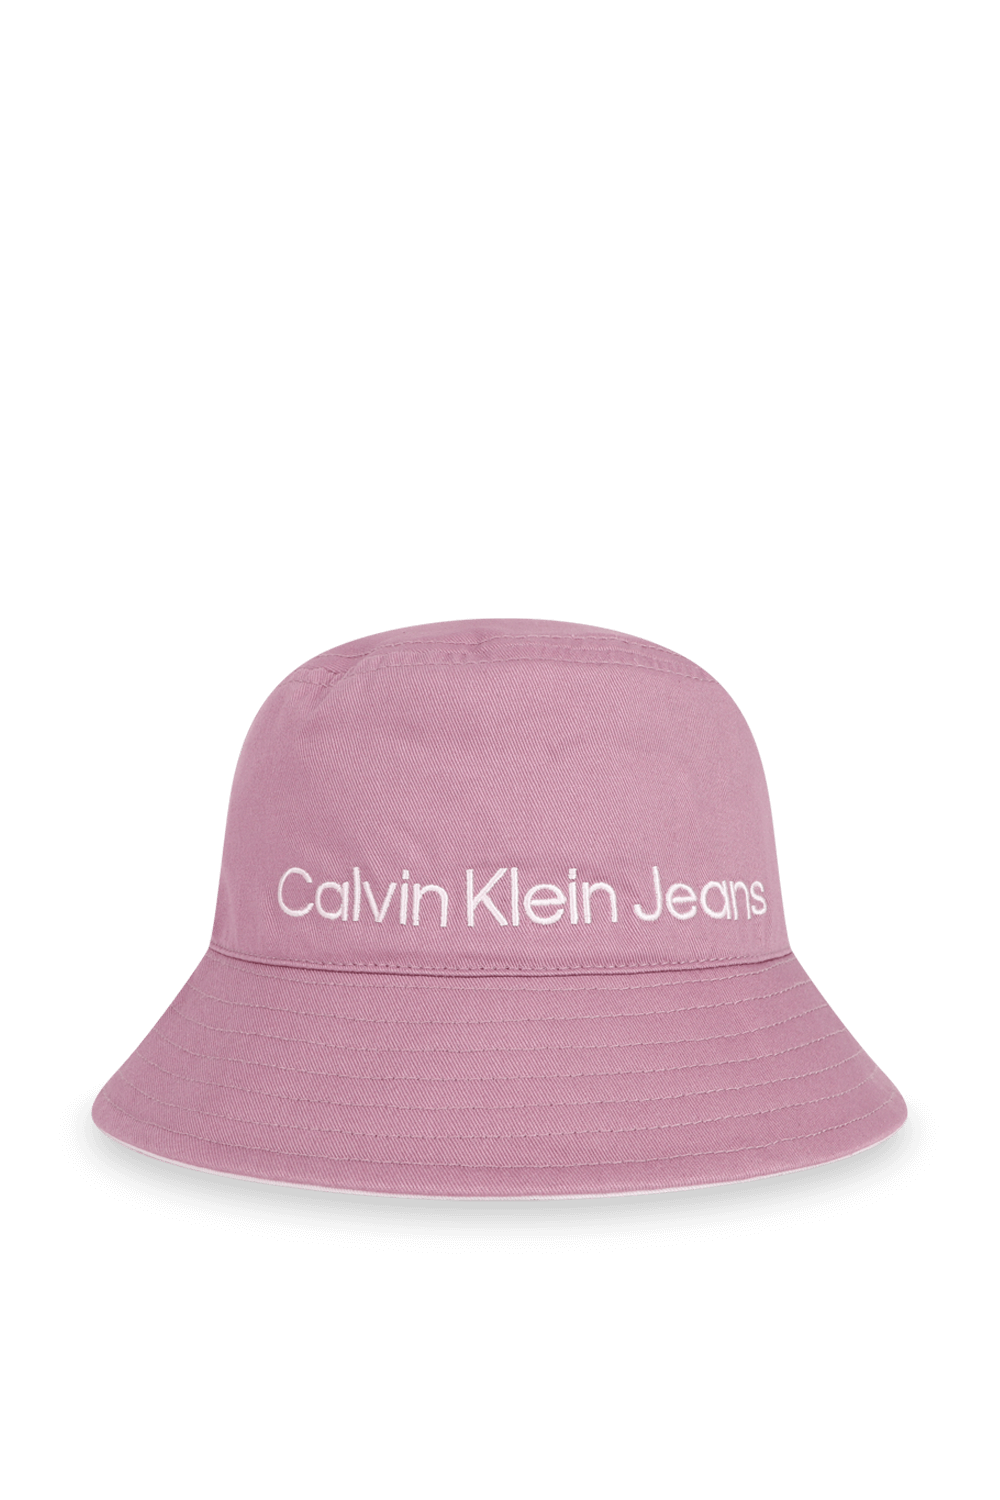 כובע באקט ורוד עם שם המותג CALVIN KLEIN